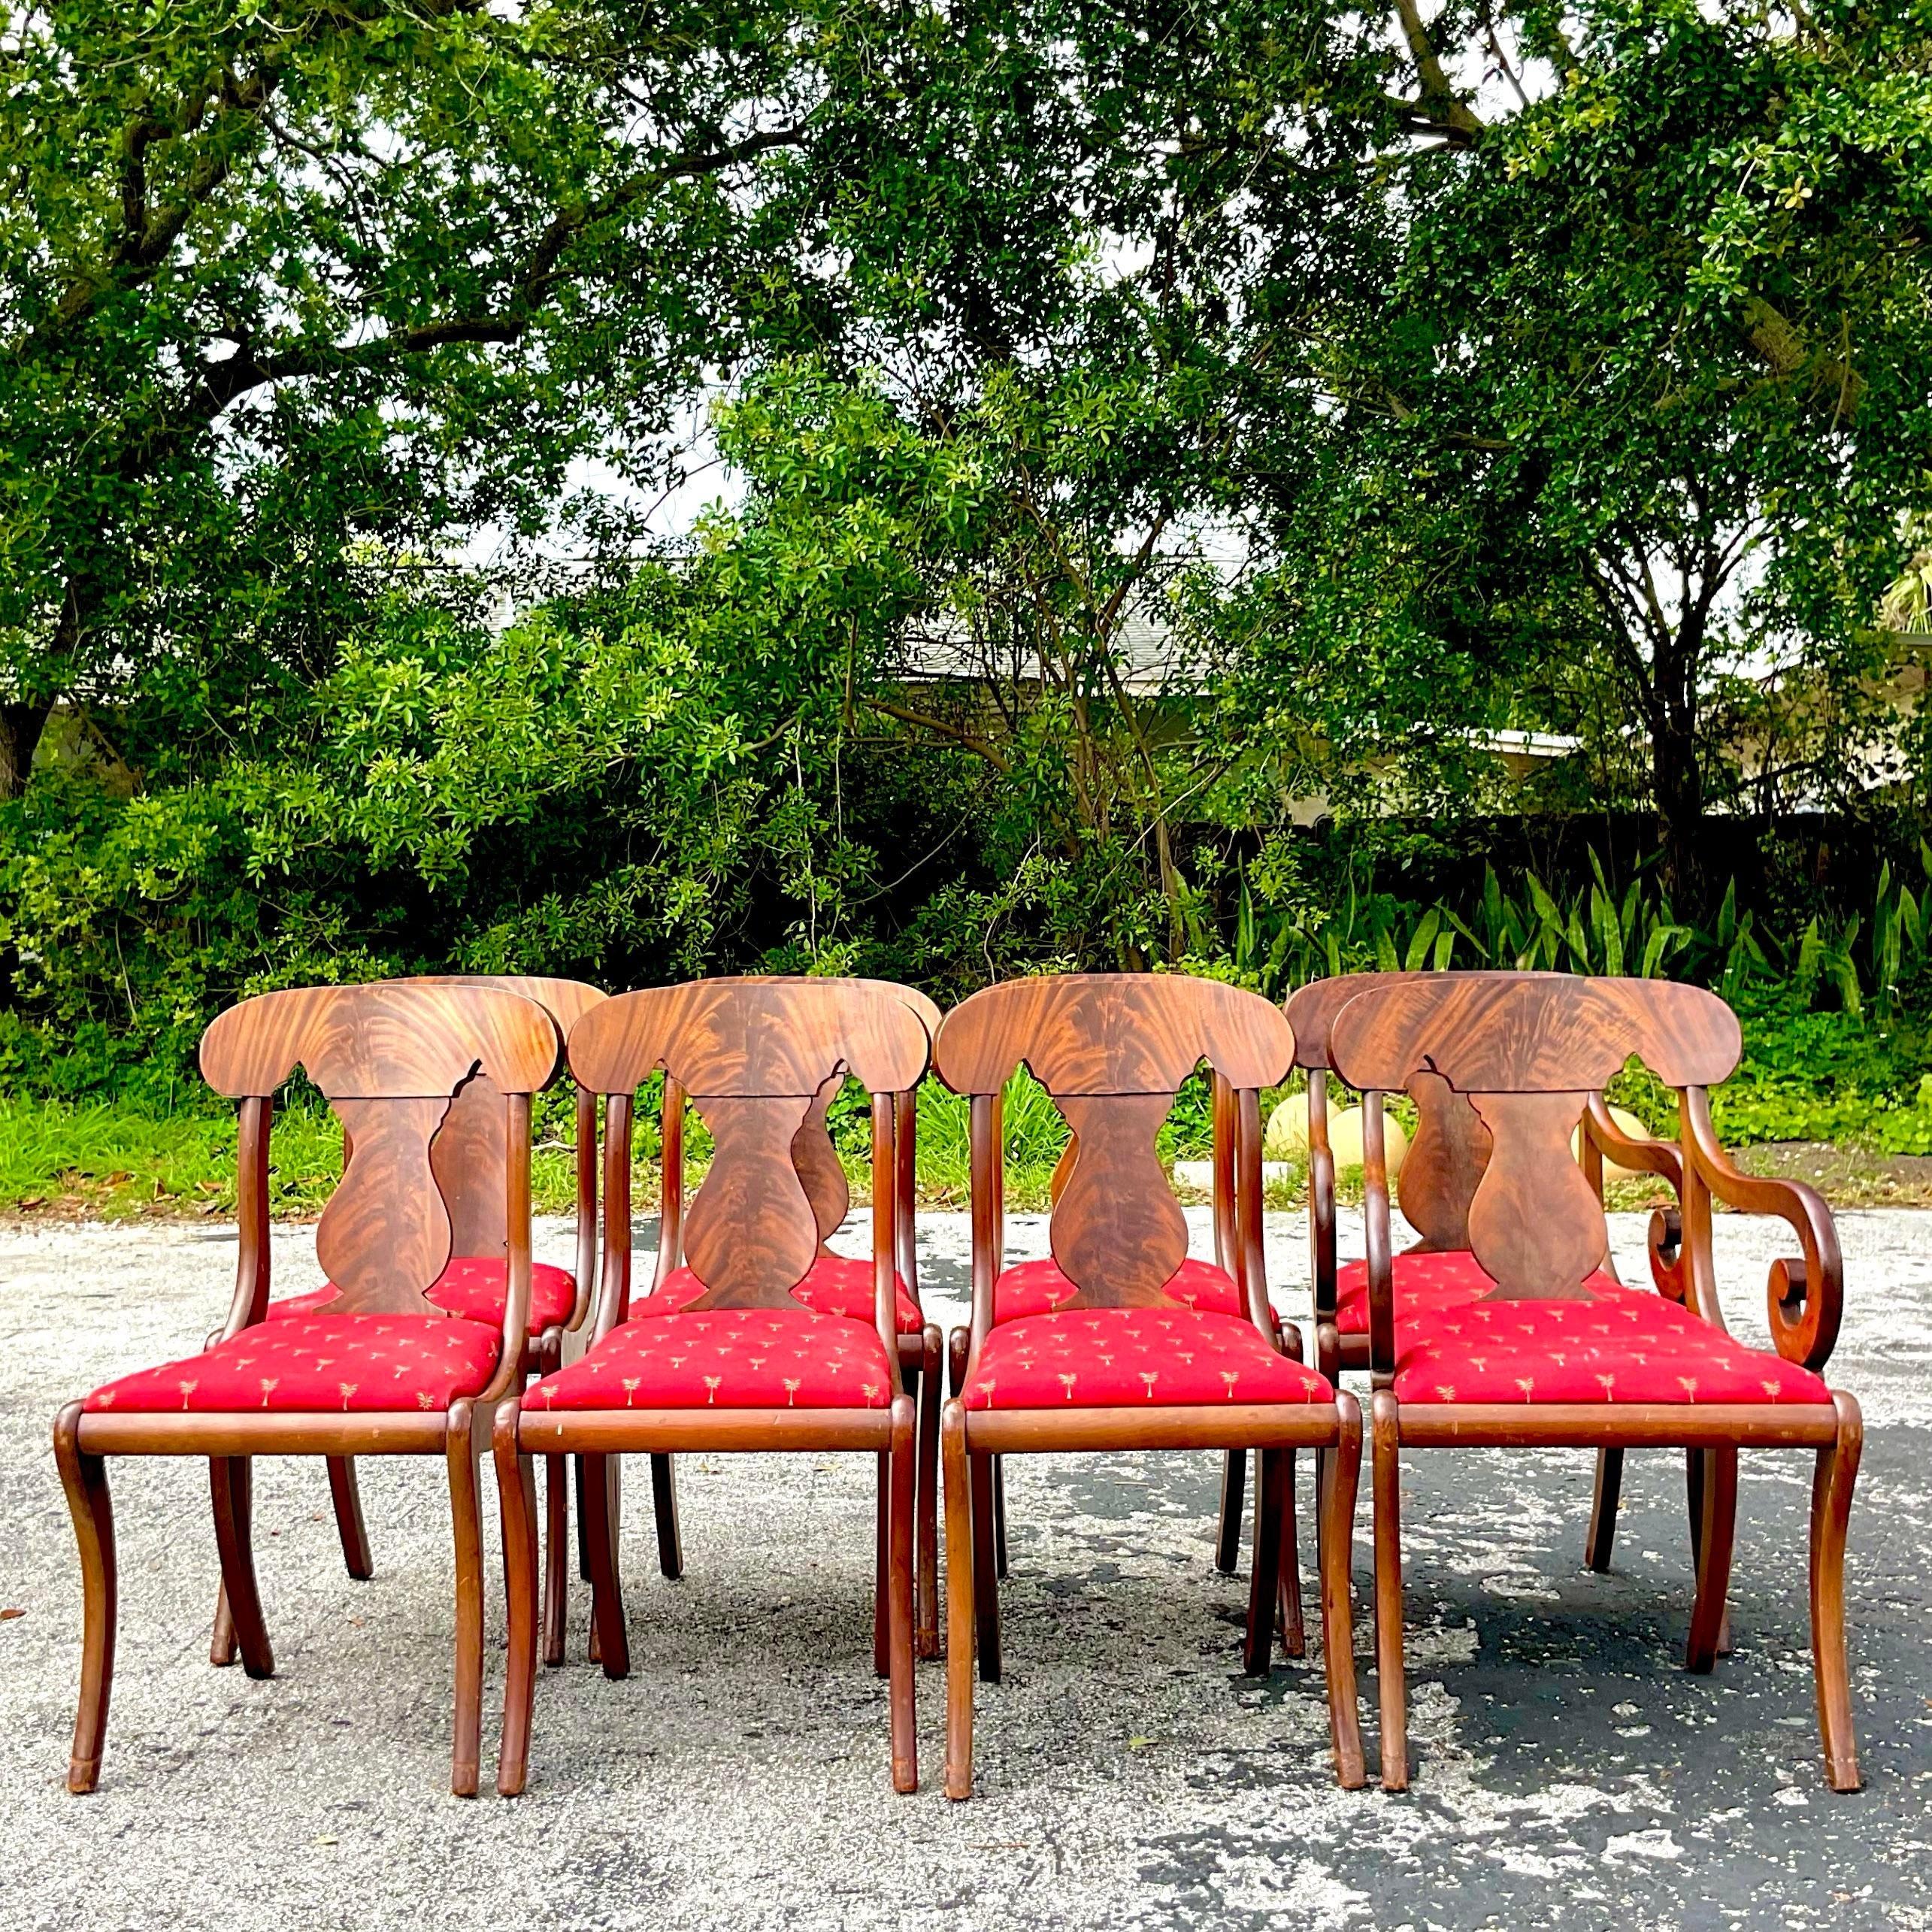 Fabriqué avec la chaleur de l'acajou flammé, cet ensemble de huit chaises de salle à manger incarne le style américain classique. Leur design AGE évoque une aura de grandeur, parfaite pour créer un espace de repas accueillant et élégant qui traverse